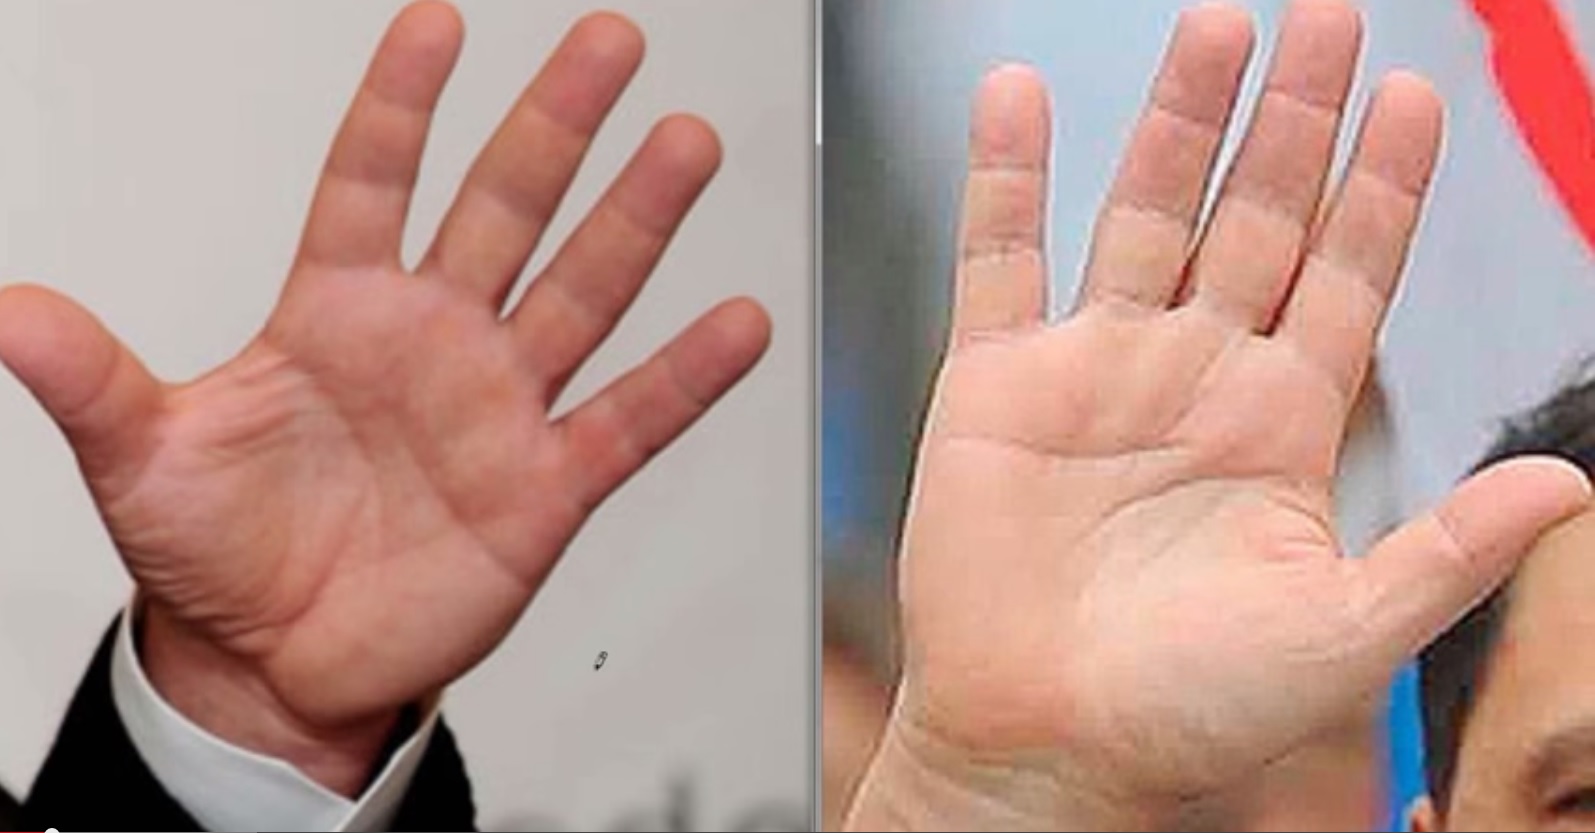 Ձեր ձեռքի ափերից կարող եք  հասկանալ՝ շաքարախտ ունե՞ք, թե ոչ